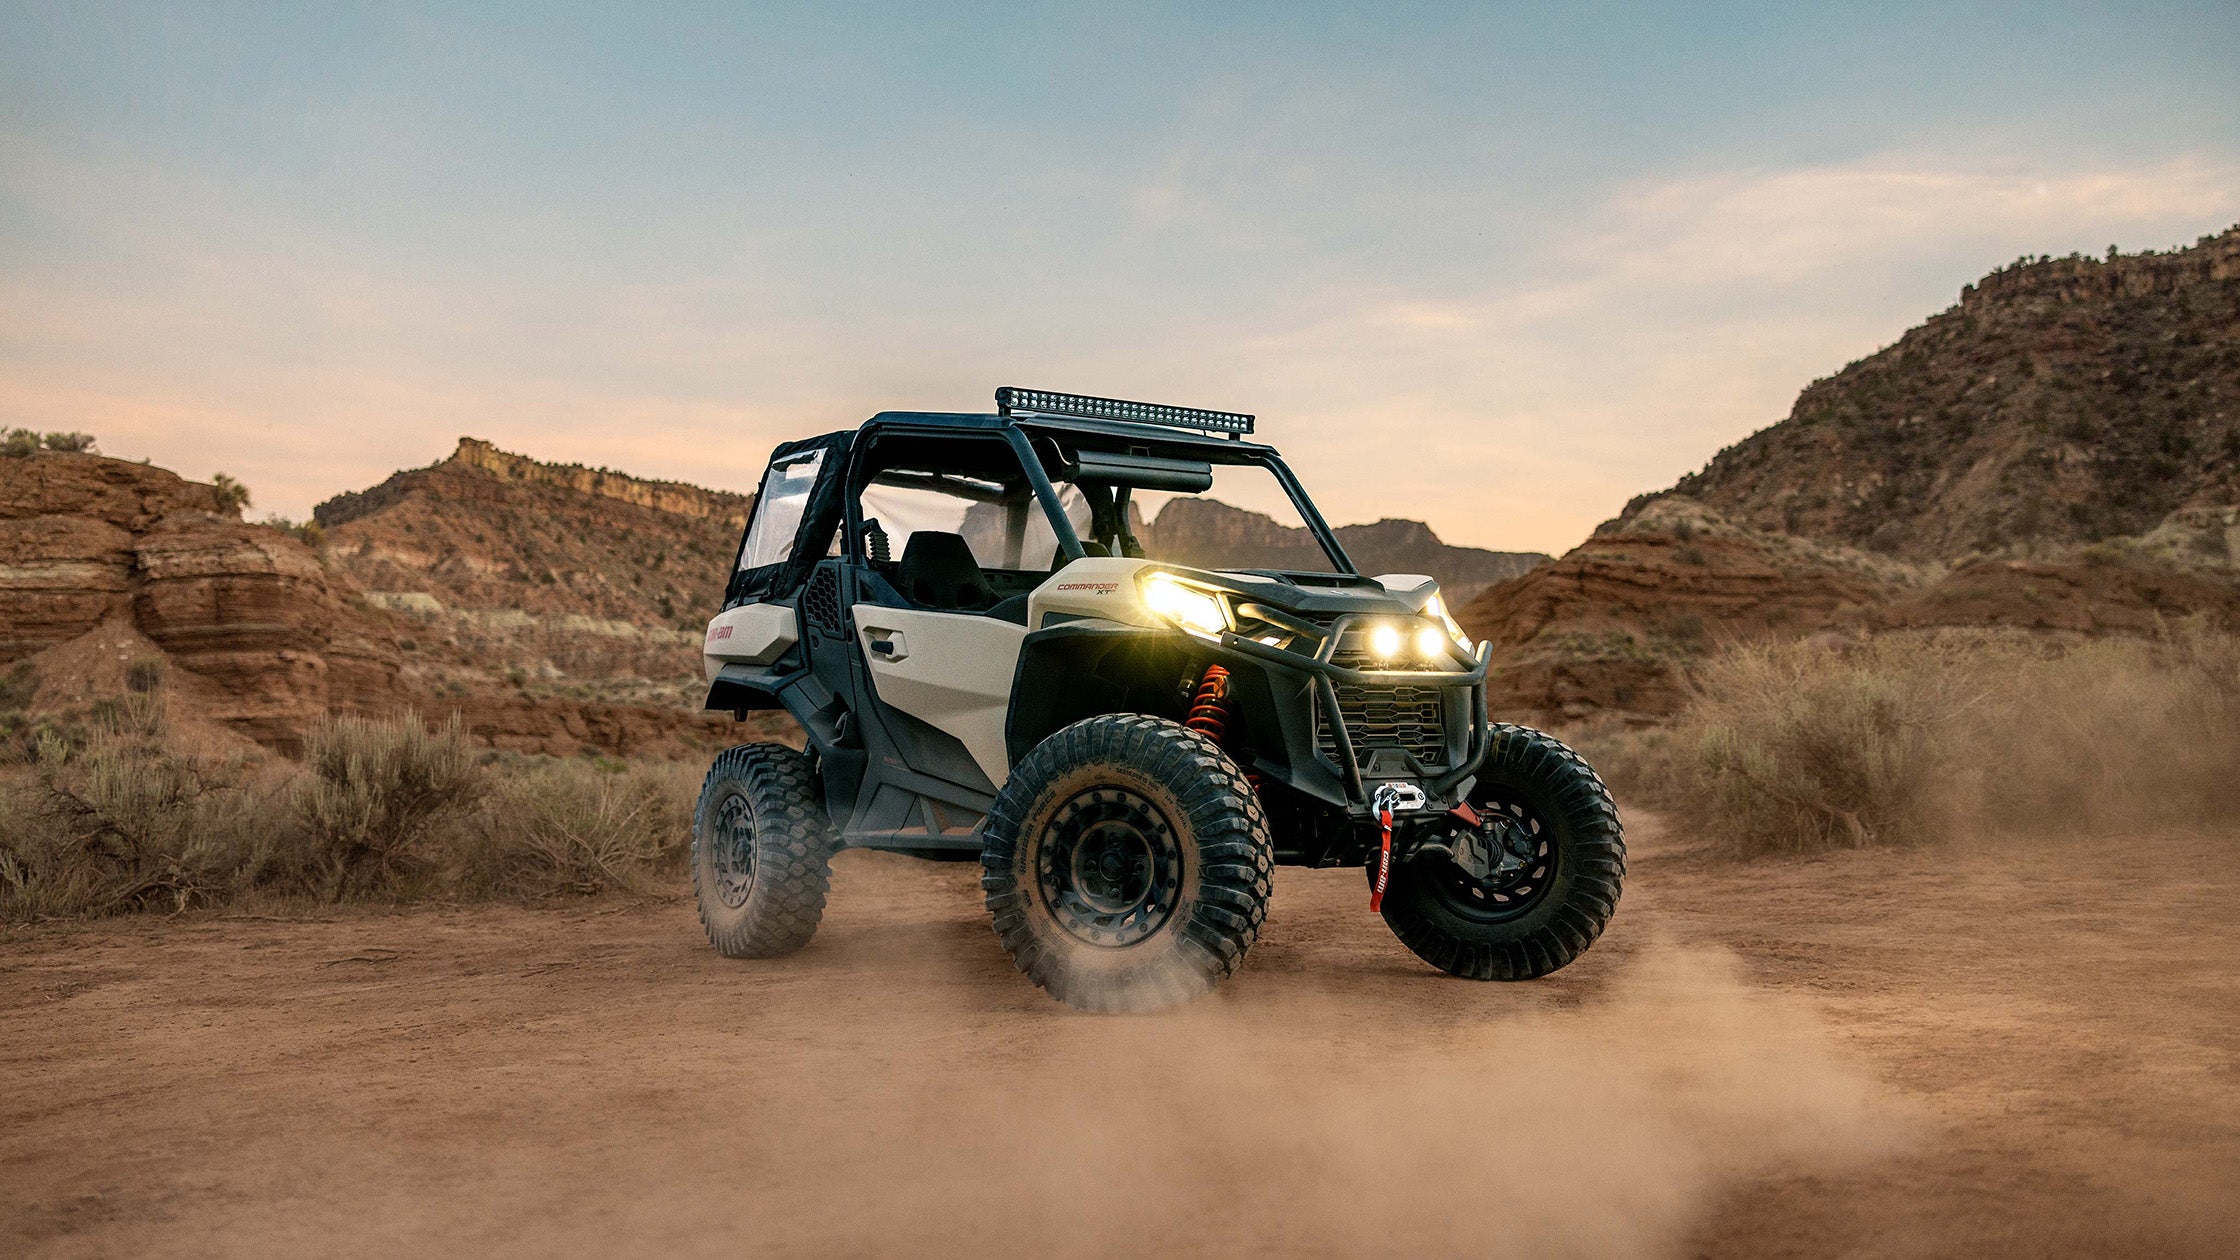 Can-Am Commander (côte à côte) équipé d'un kit de levage PERFEX Industries, naviguant avec puissance sur le terrain désertique, mettant en valeur les capacités hors route et la robustesse améliorées du véhicule.